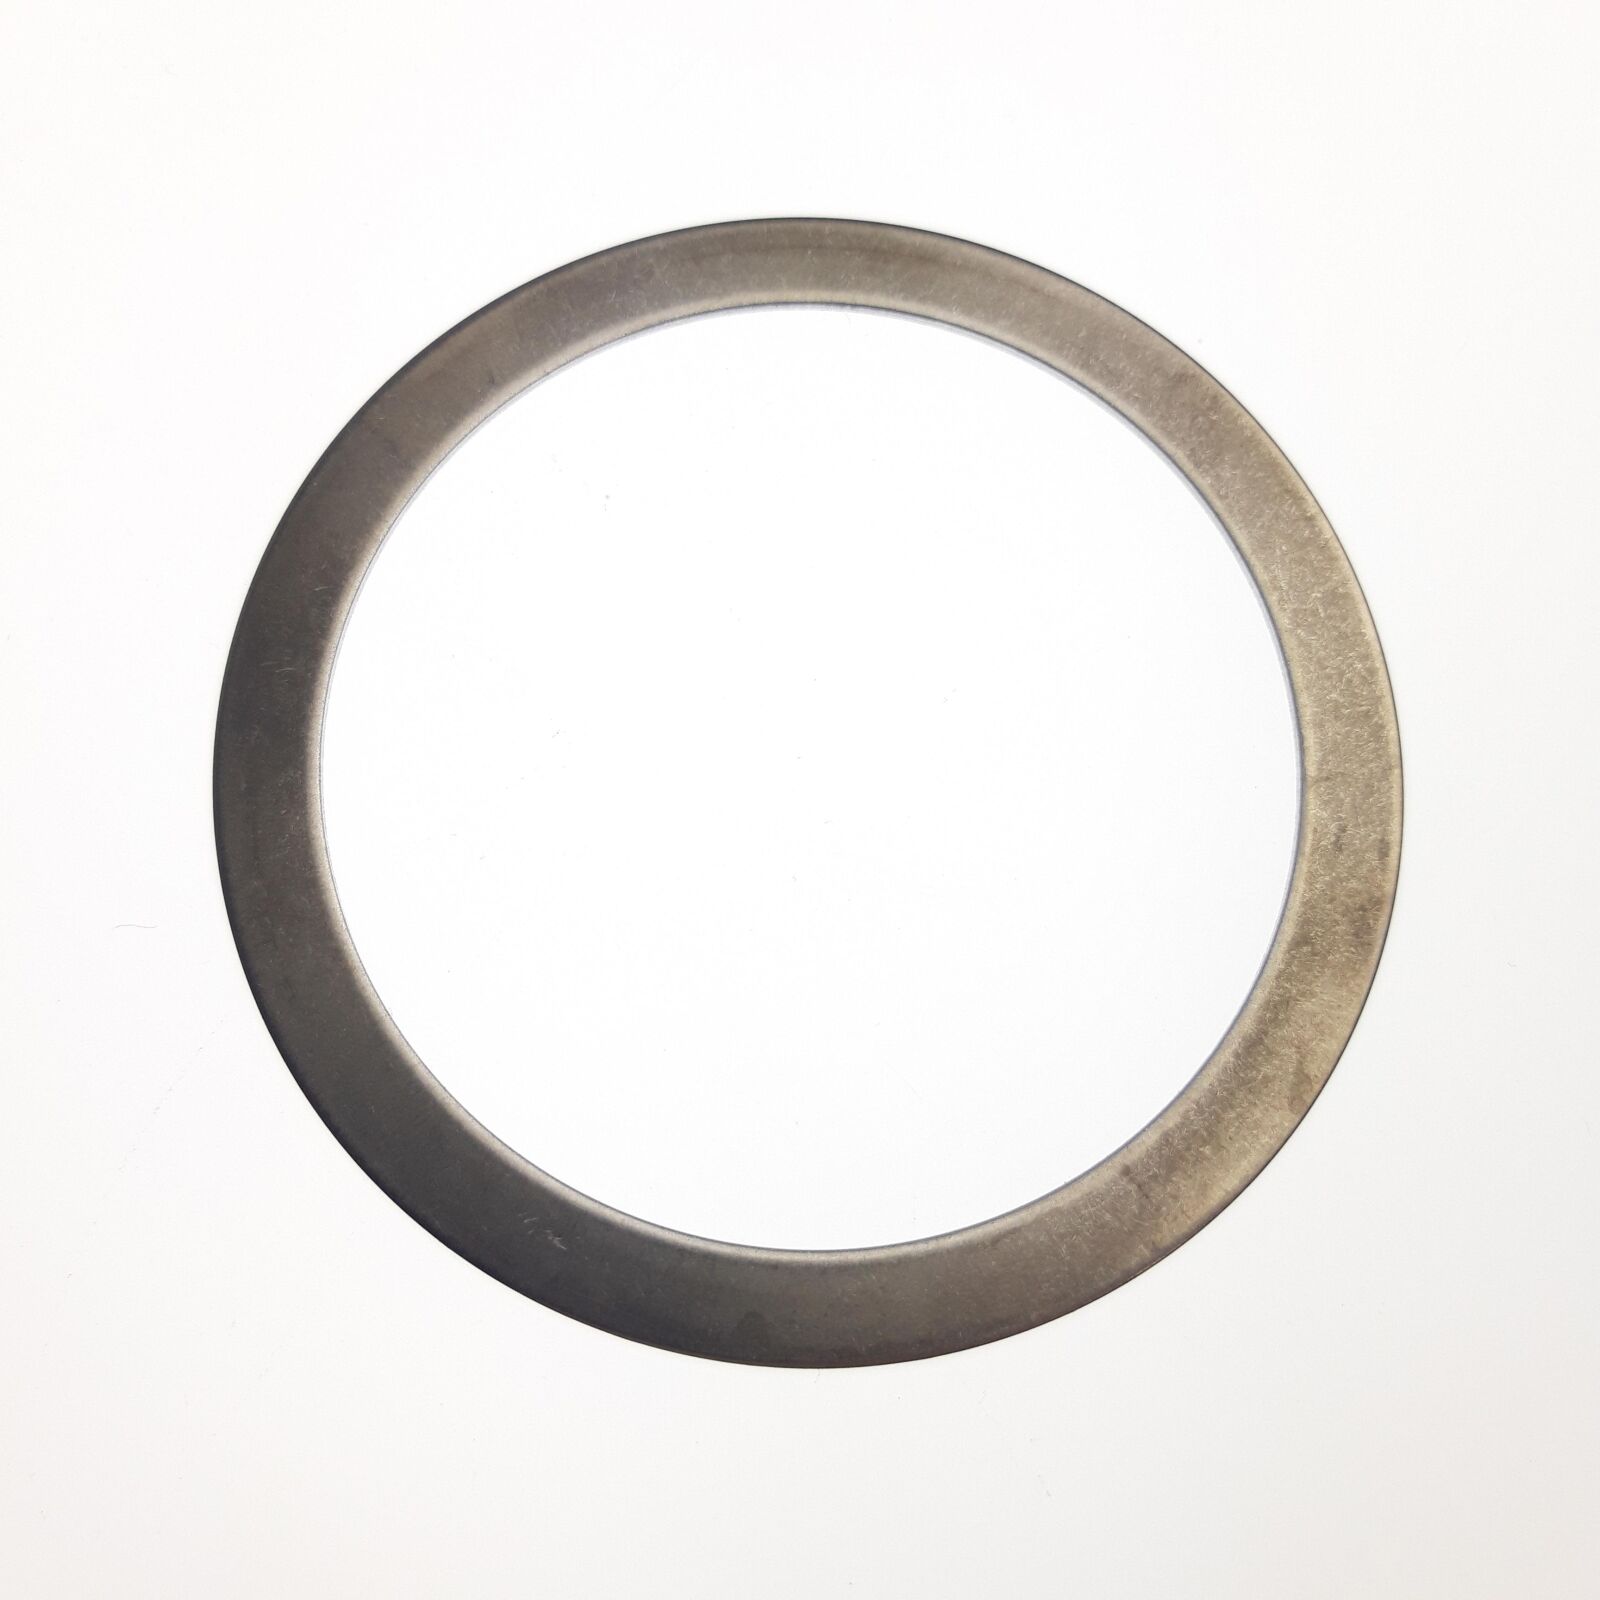 Obrázek produktu Fastener, Standard: Washer,Thrust (2.510 ID X 3.050 OD X 0.040 TH) Steel, Preload Ring 018-05-023